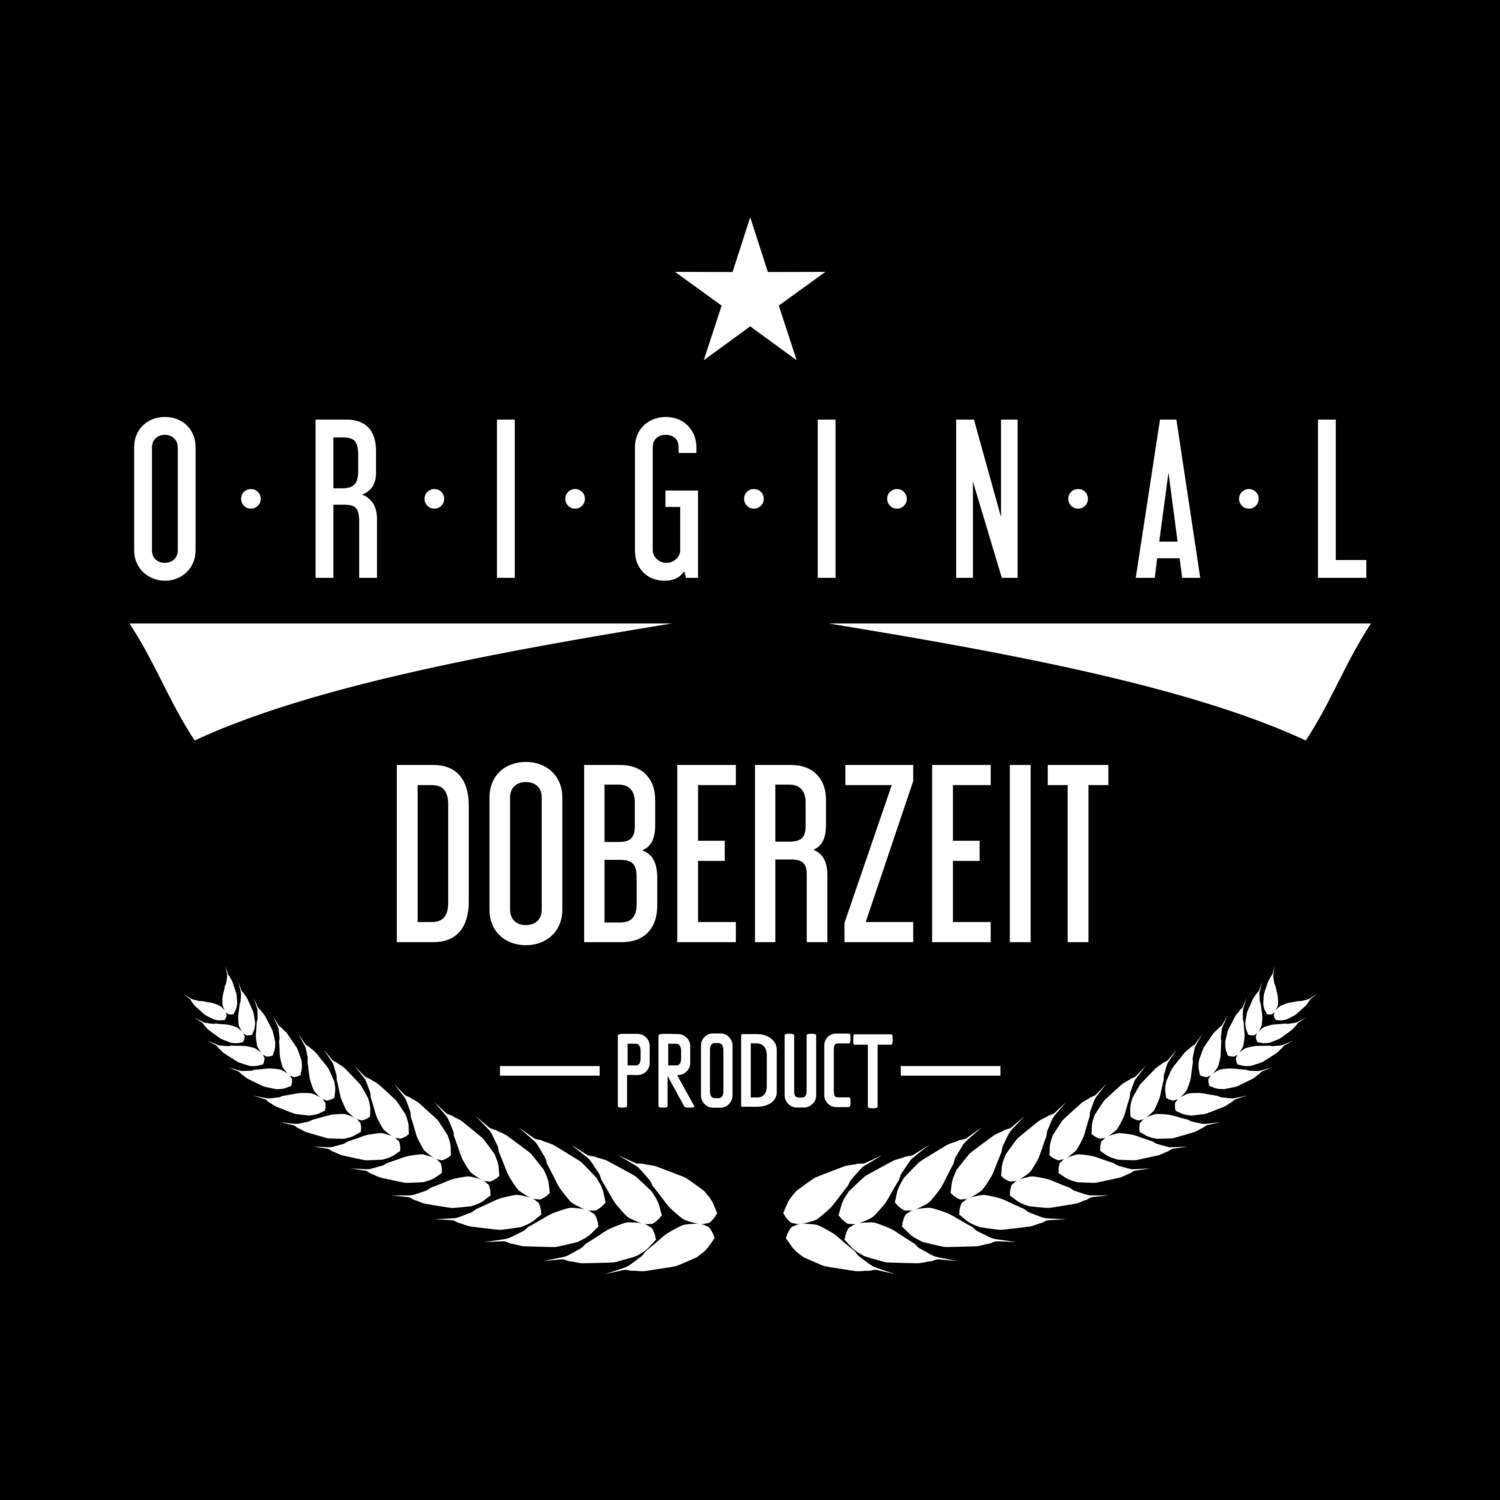 Doberzeit T-Shirt »Original Product«